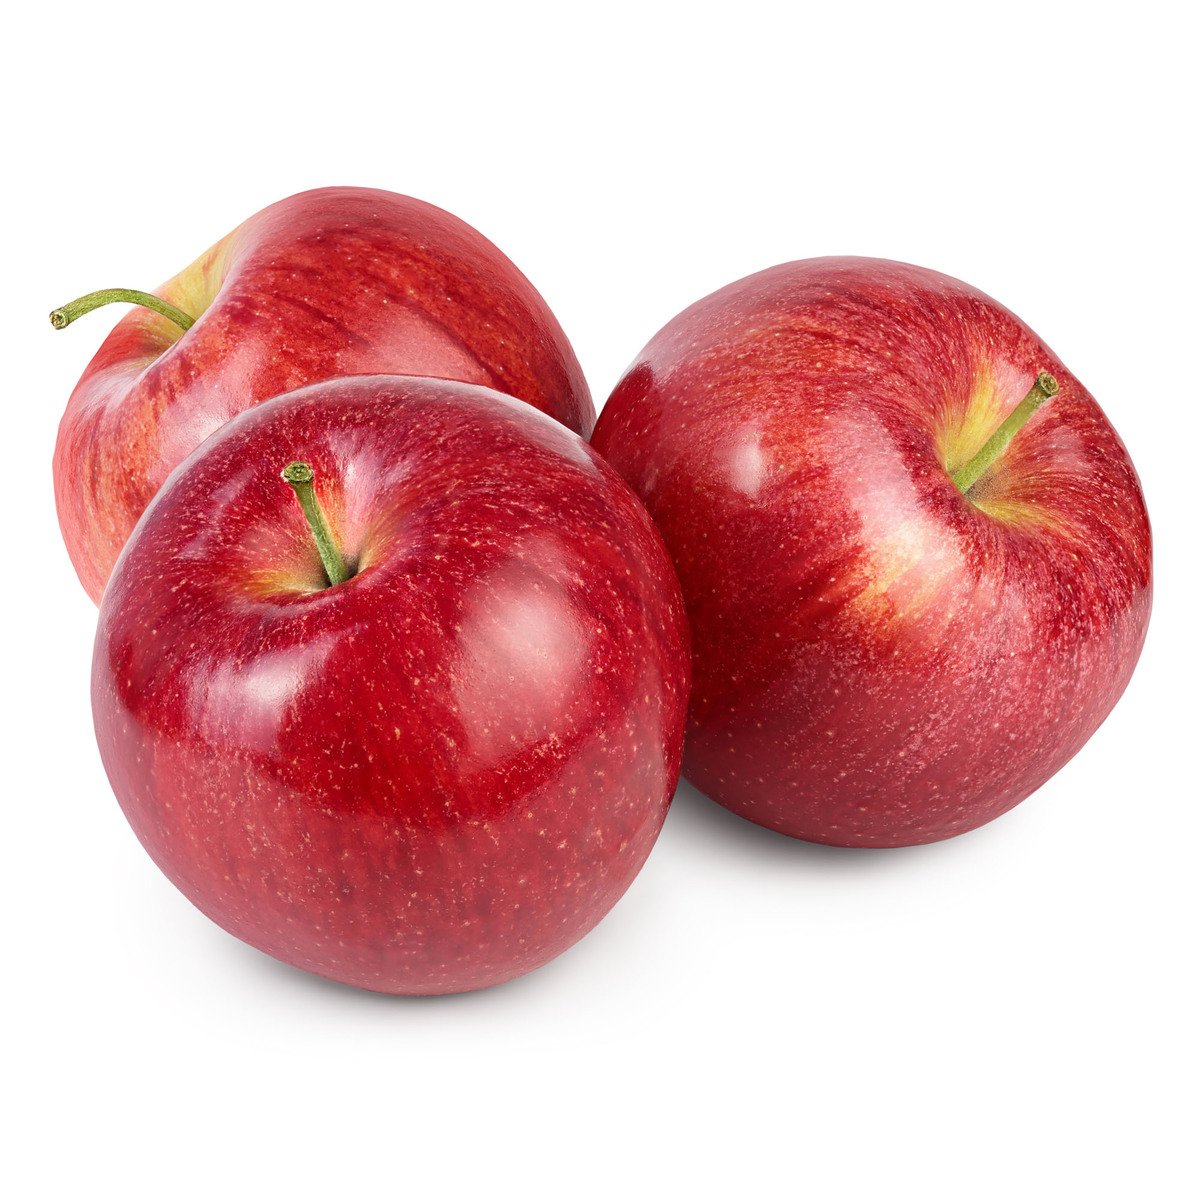 Apple Red Greece 1kg Online At Best Price Apples Lulu Uae Price In Uae Lulu Uae 